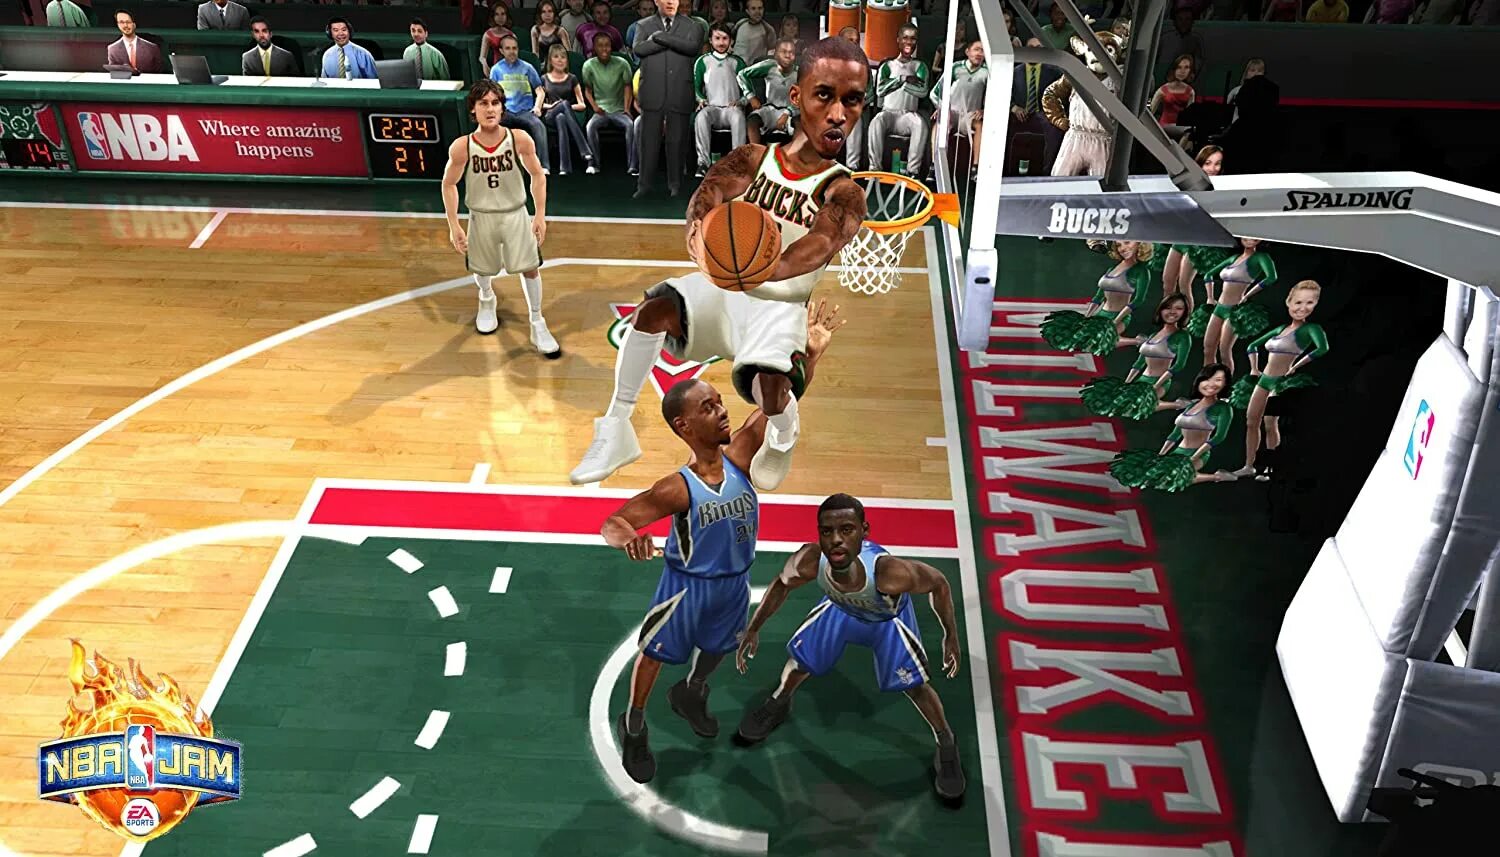 НБА джэм. NBA Jam ps3 управление. Игра NBA Jam ps3. NBA Jam (2010 Video game). Amazing happens